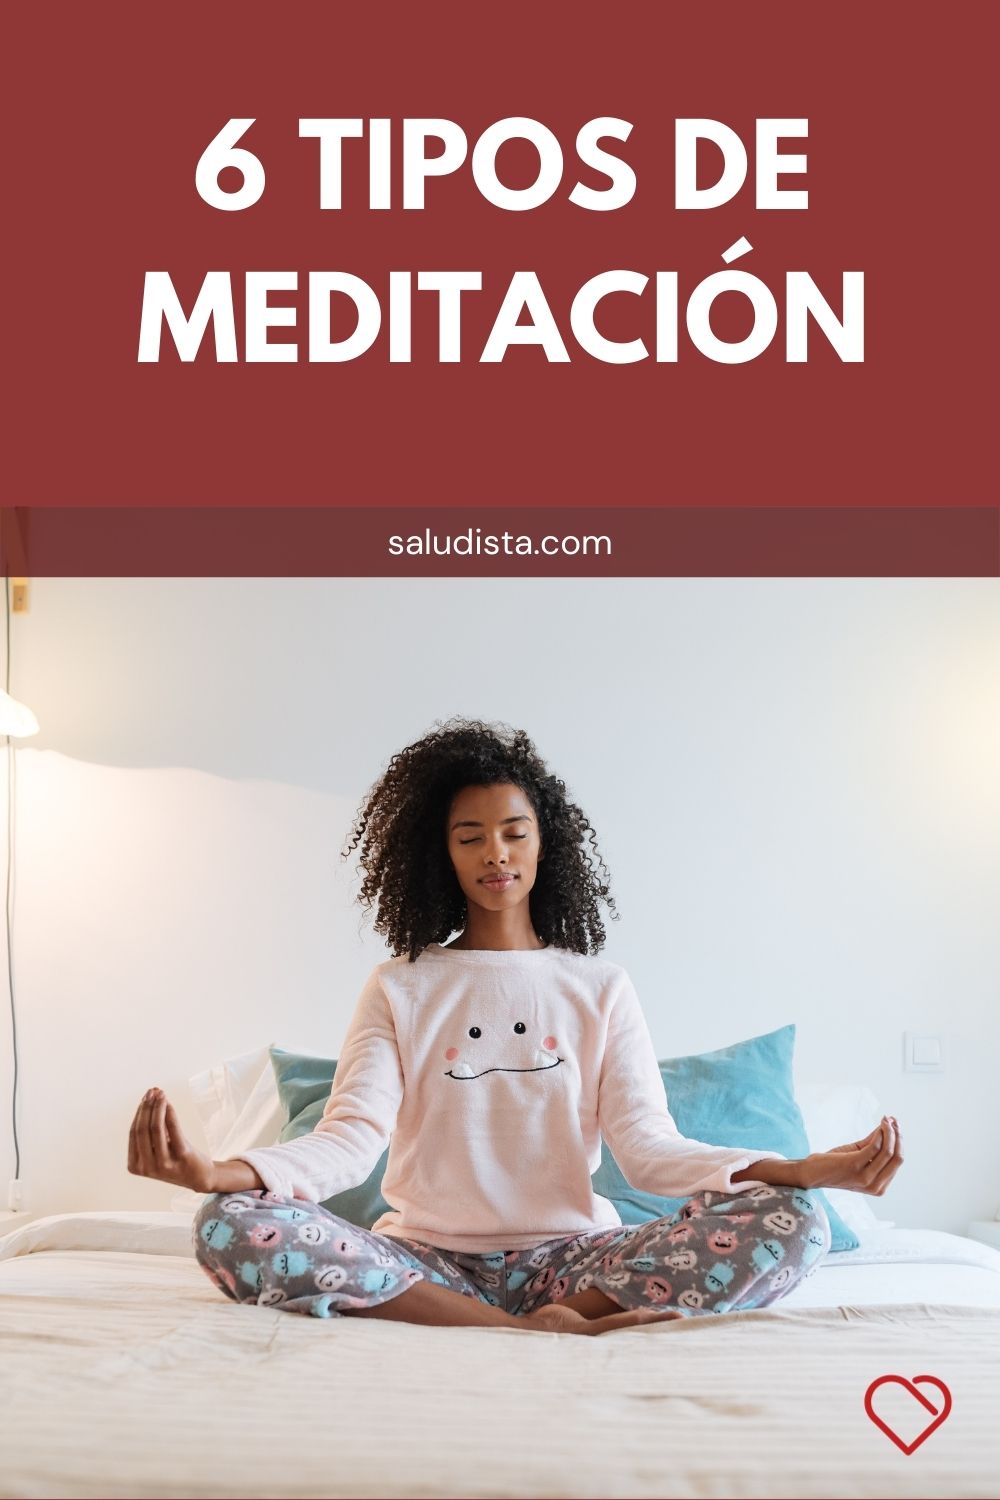 6 Tipos de meditación